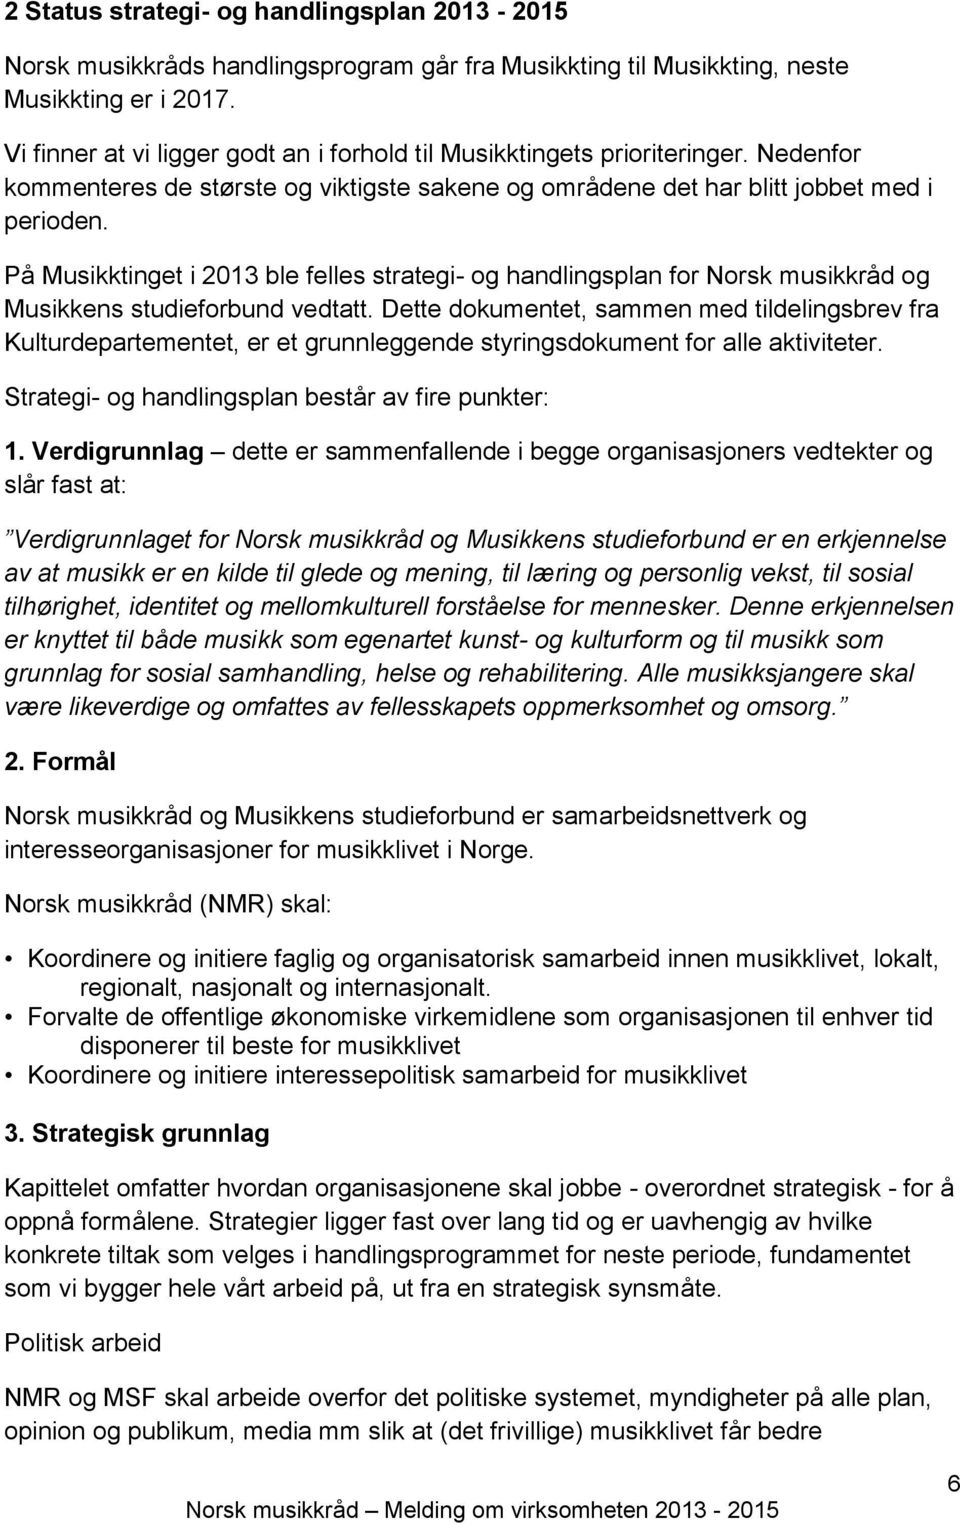 På Musikktinget i 2013 ble felles strategi- og handlingsplan for Norsk musikkråd og Musikkens studieforbund vedtatt.